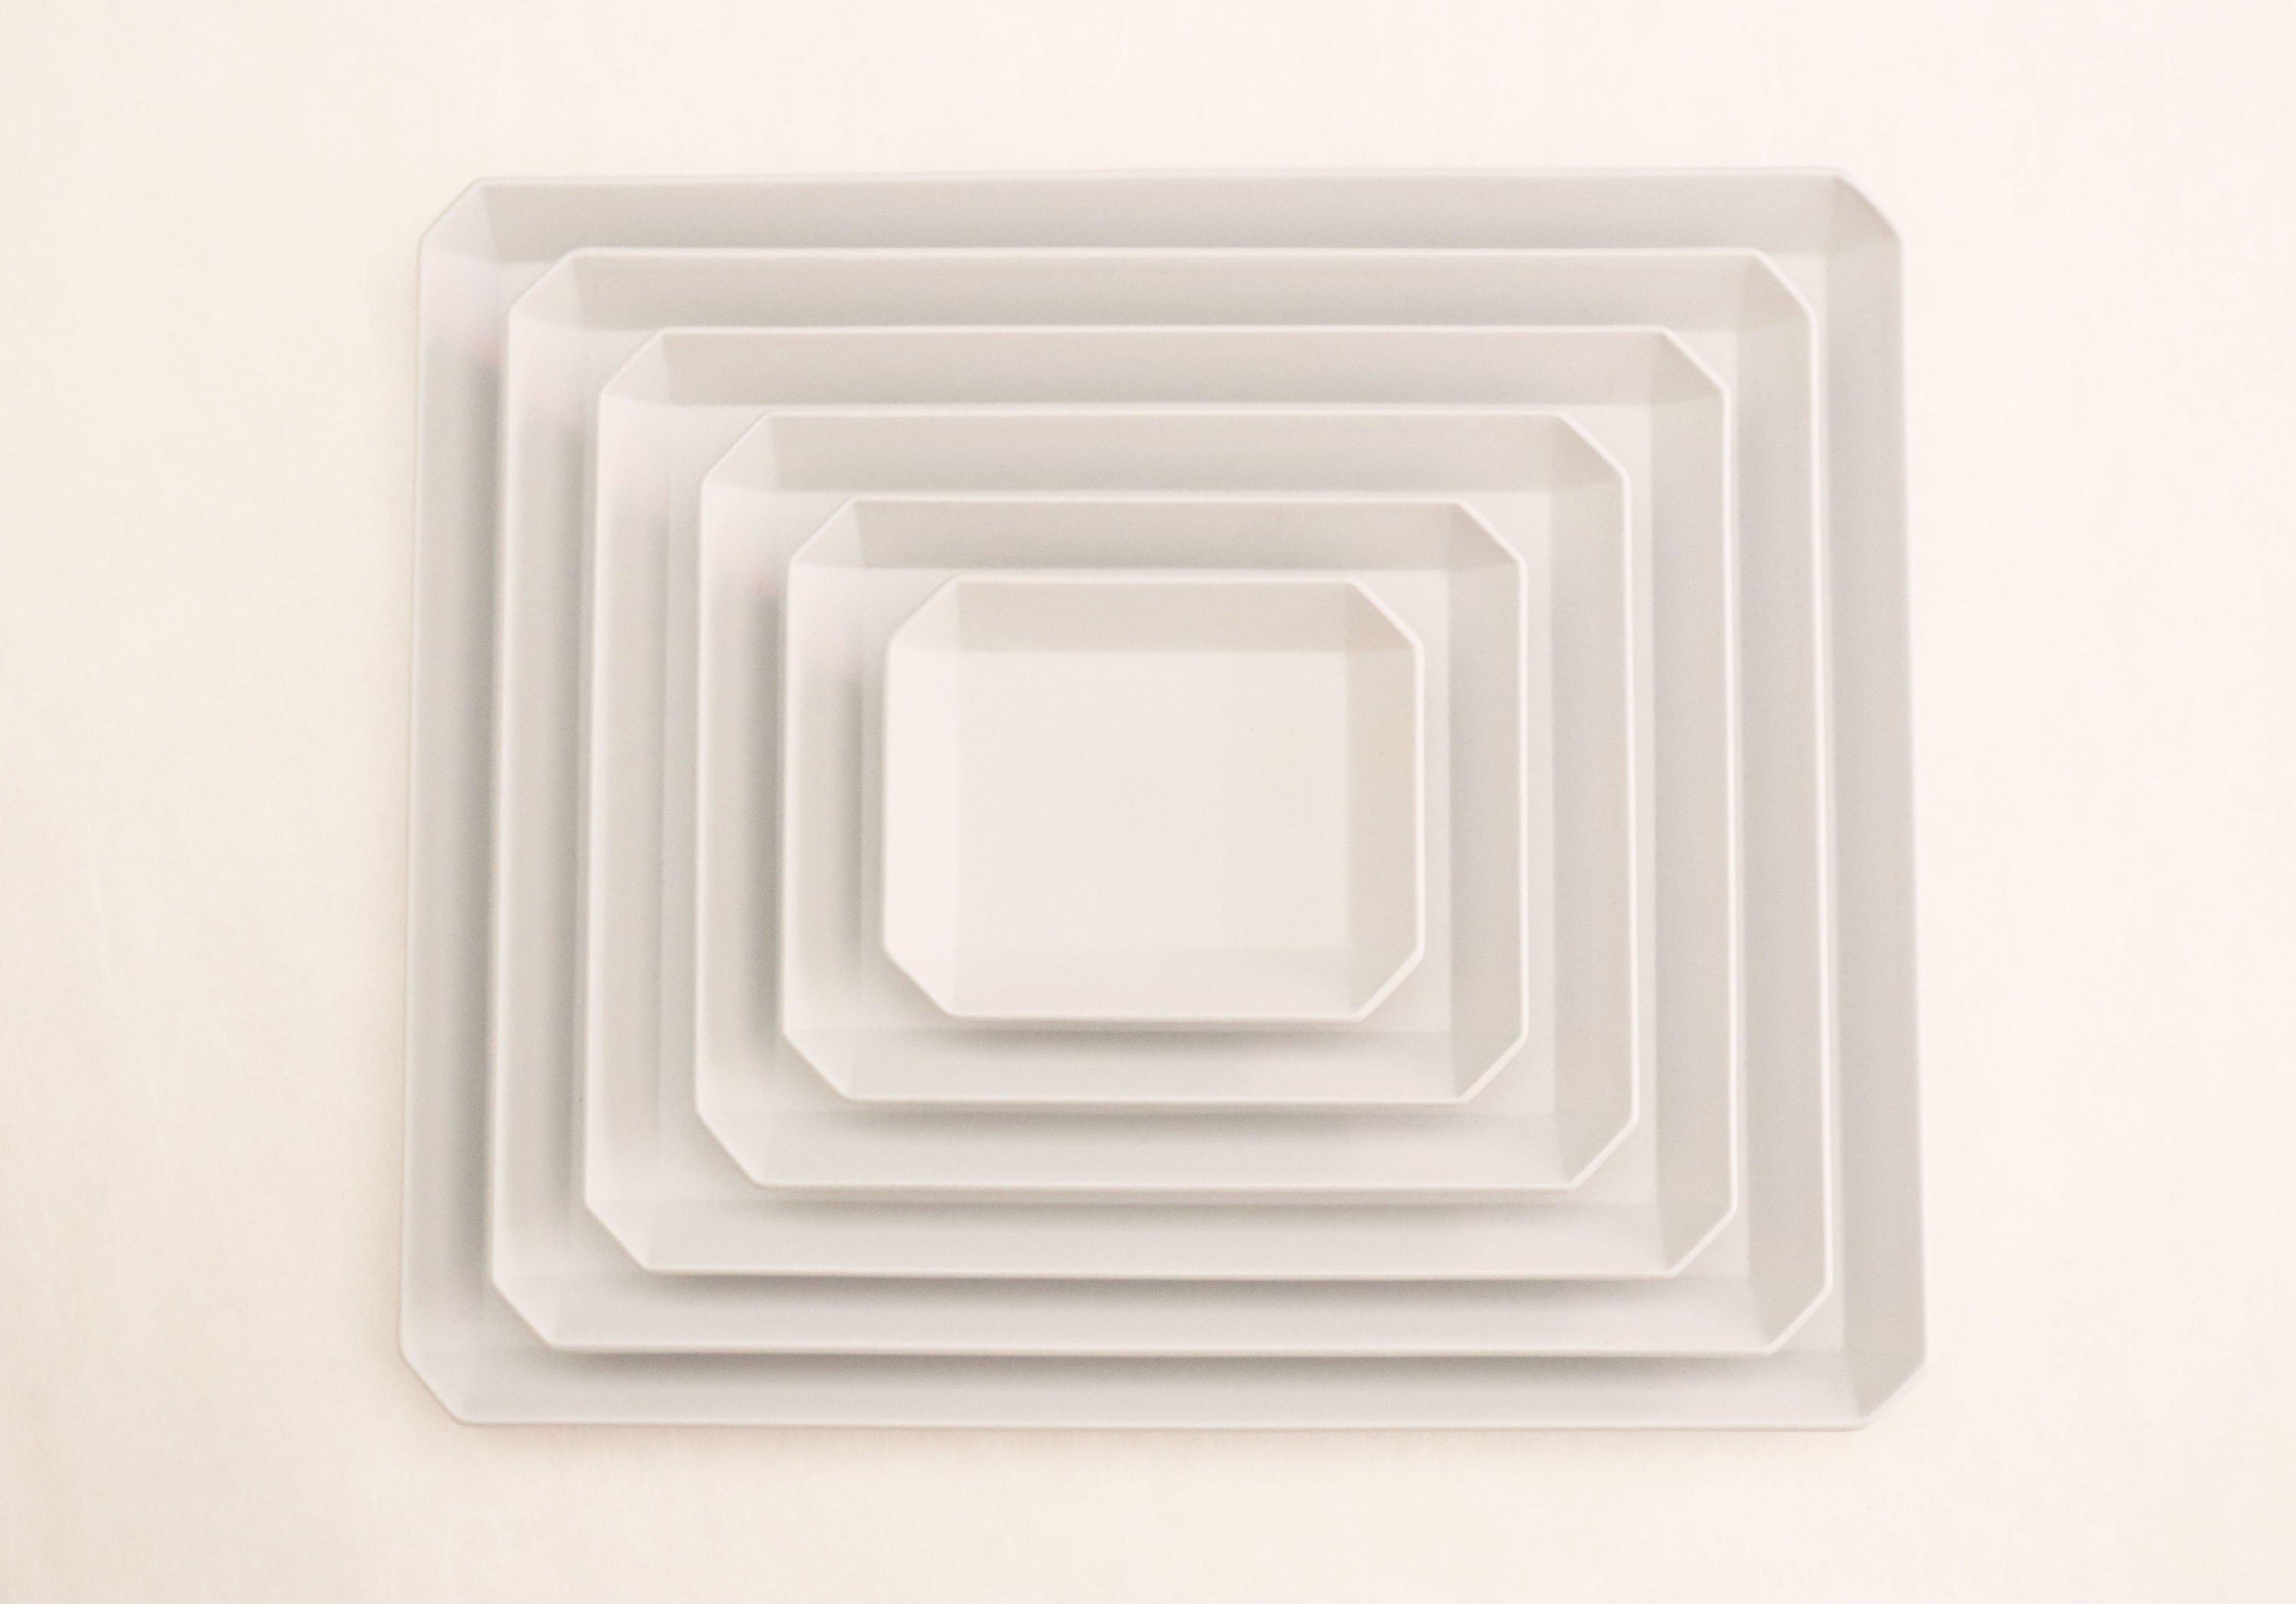 TY"Standard" Square Plate plain Gray 270-1616 / arita japan-YUGEN ONLINE STORE